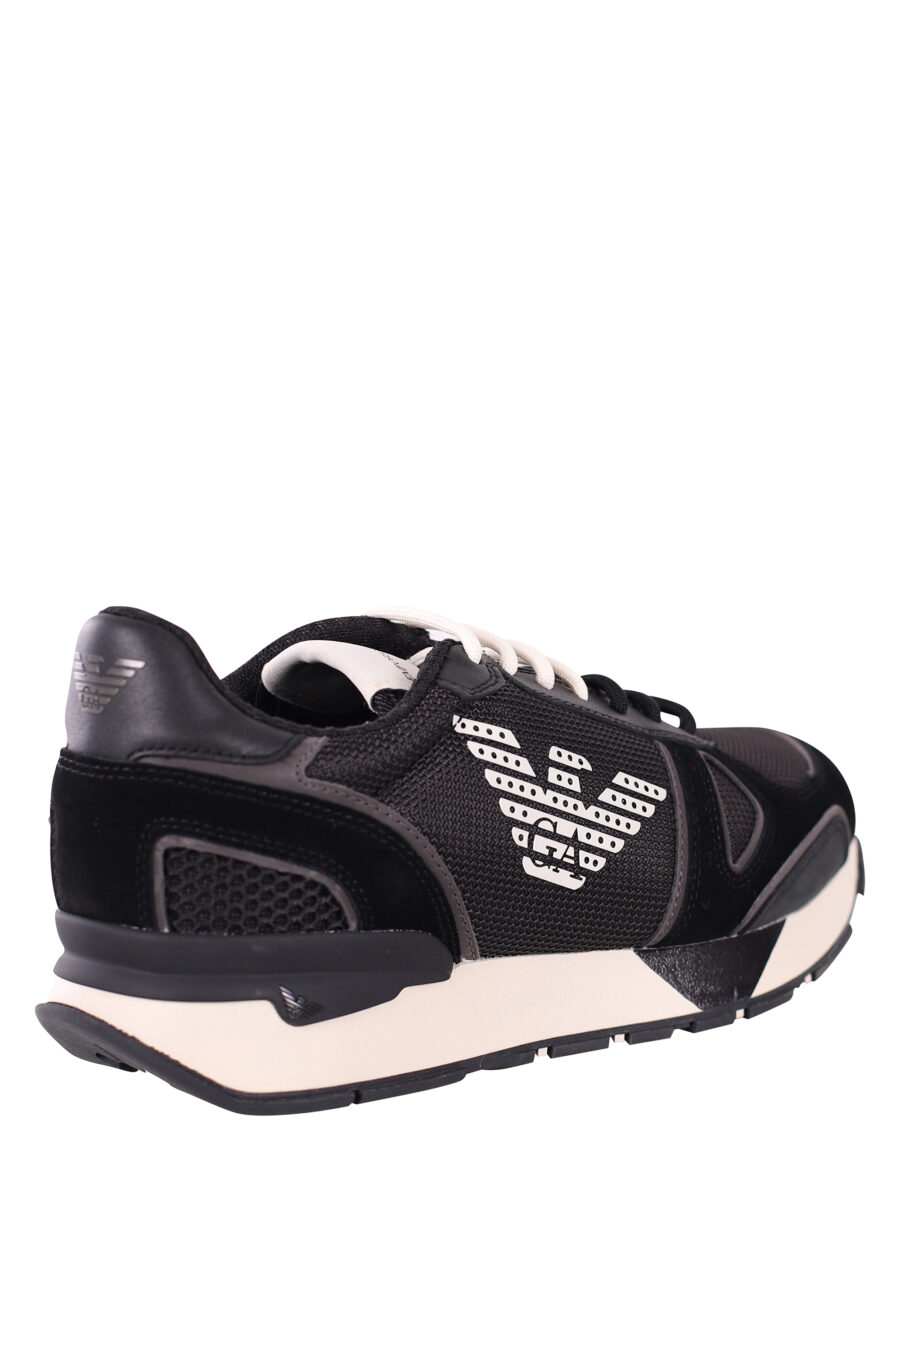 Zapatillas negras con maxilogo aguila blanco - IMG 5778